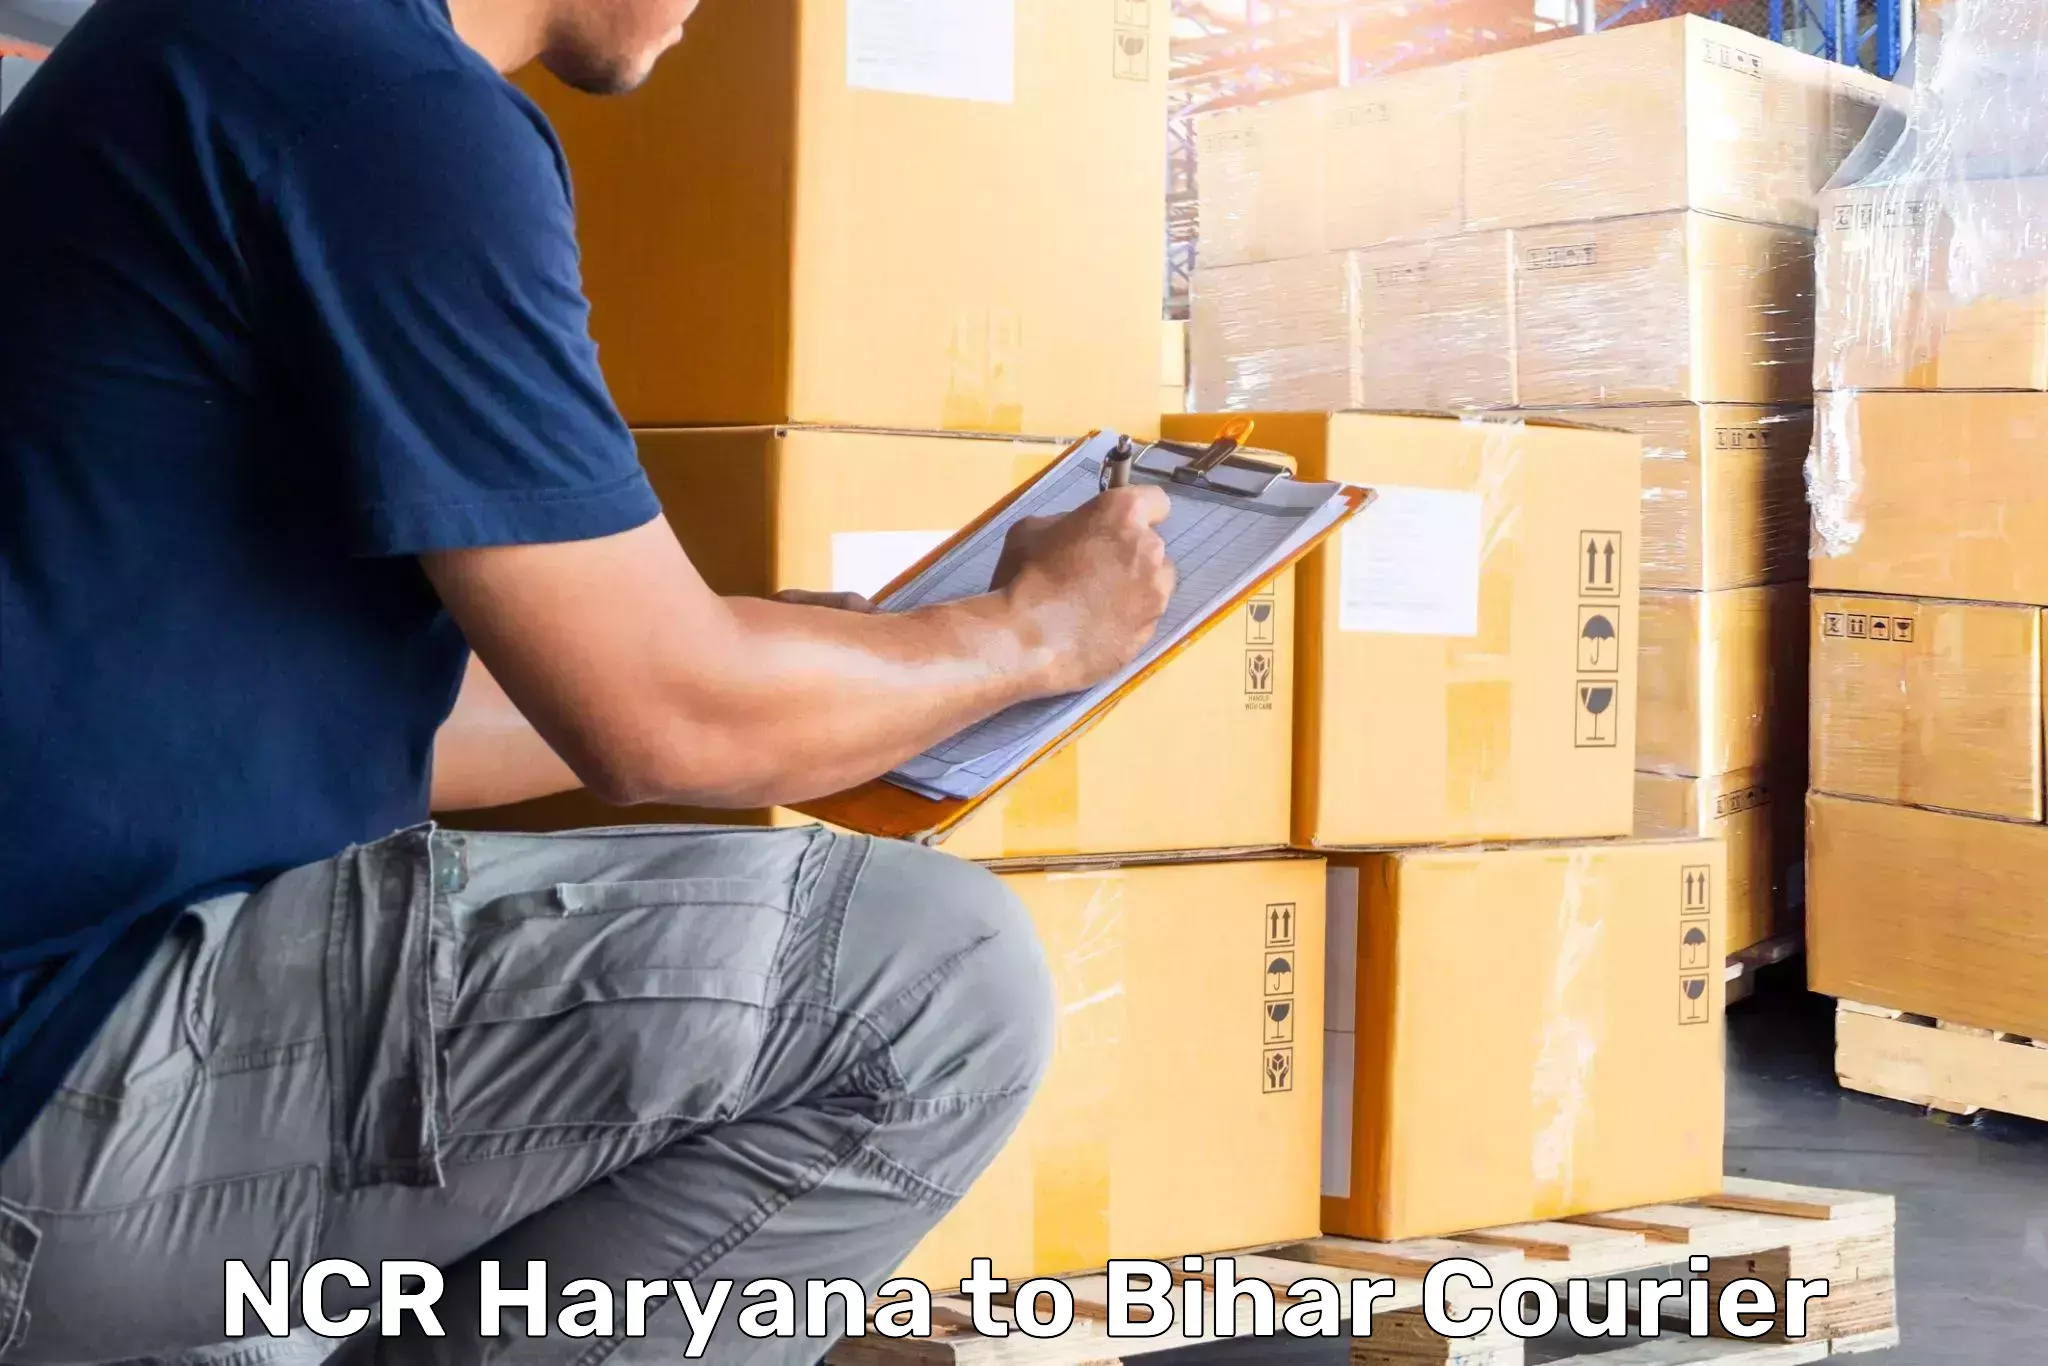 Baggage transport estimate NCR Haryana to Mahnar Bazar